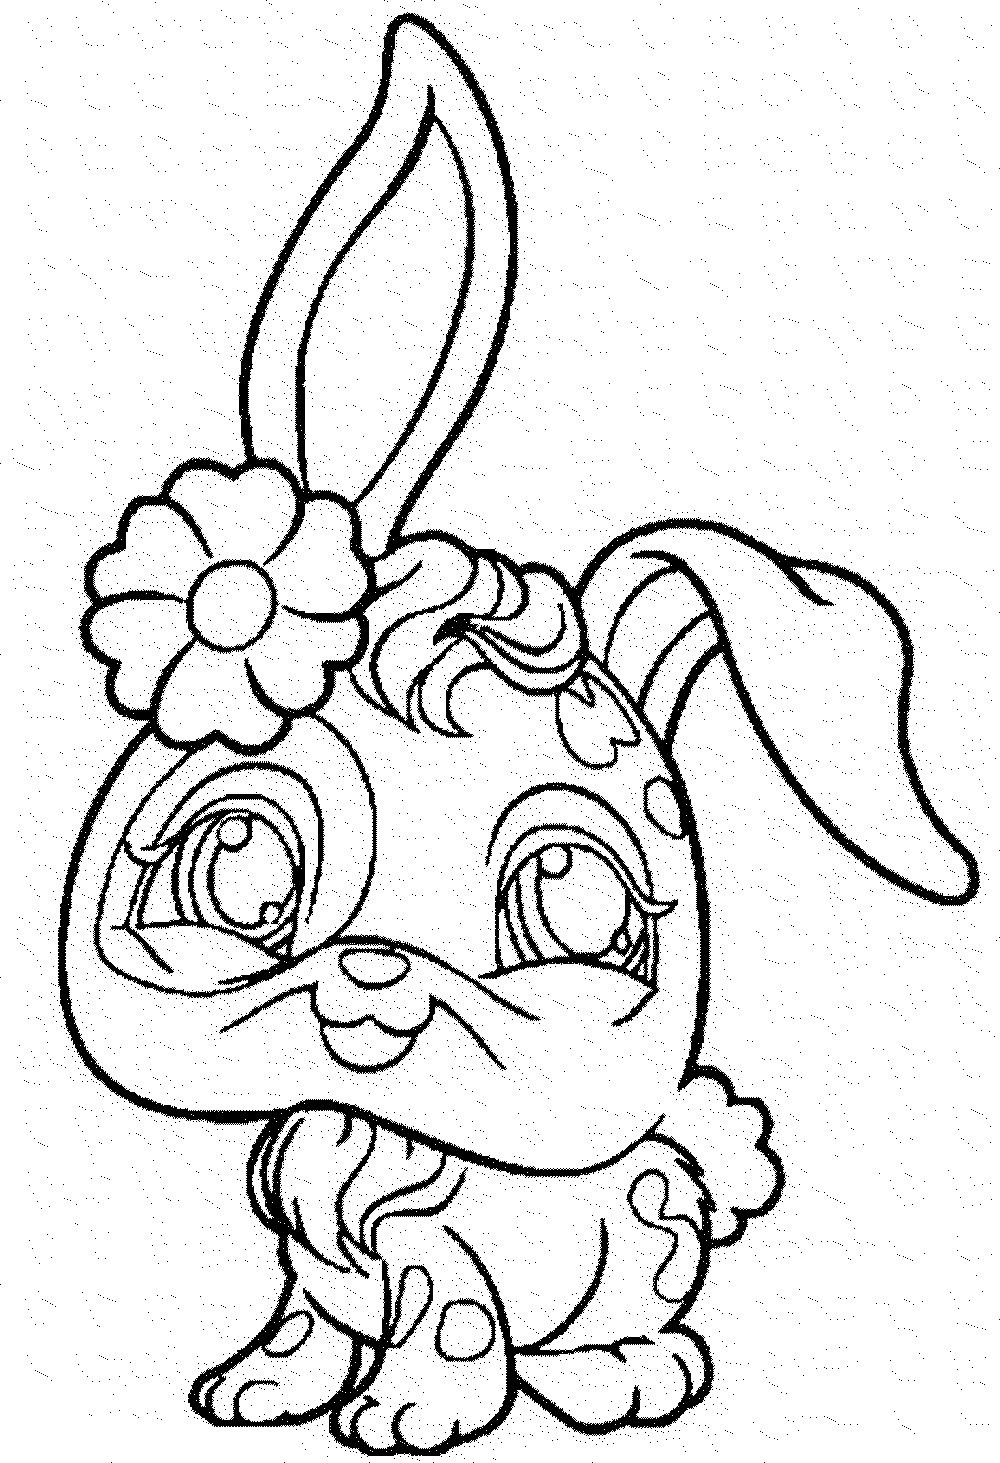 littlest pet shop coloring pages bunny